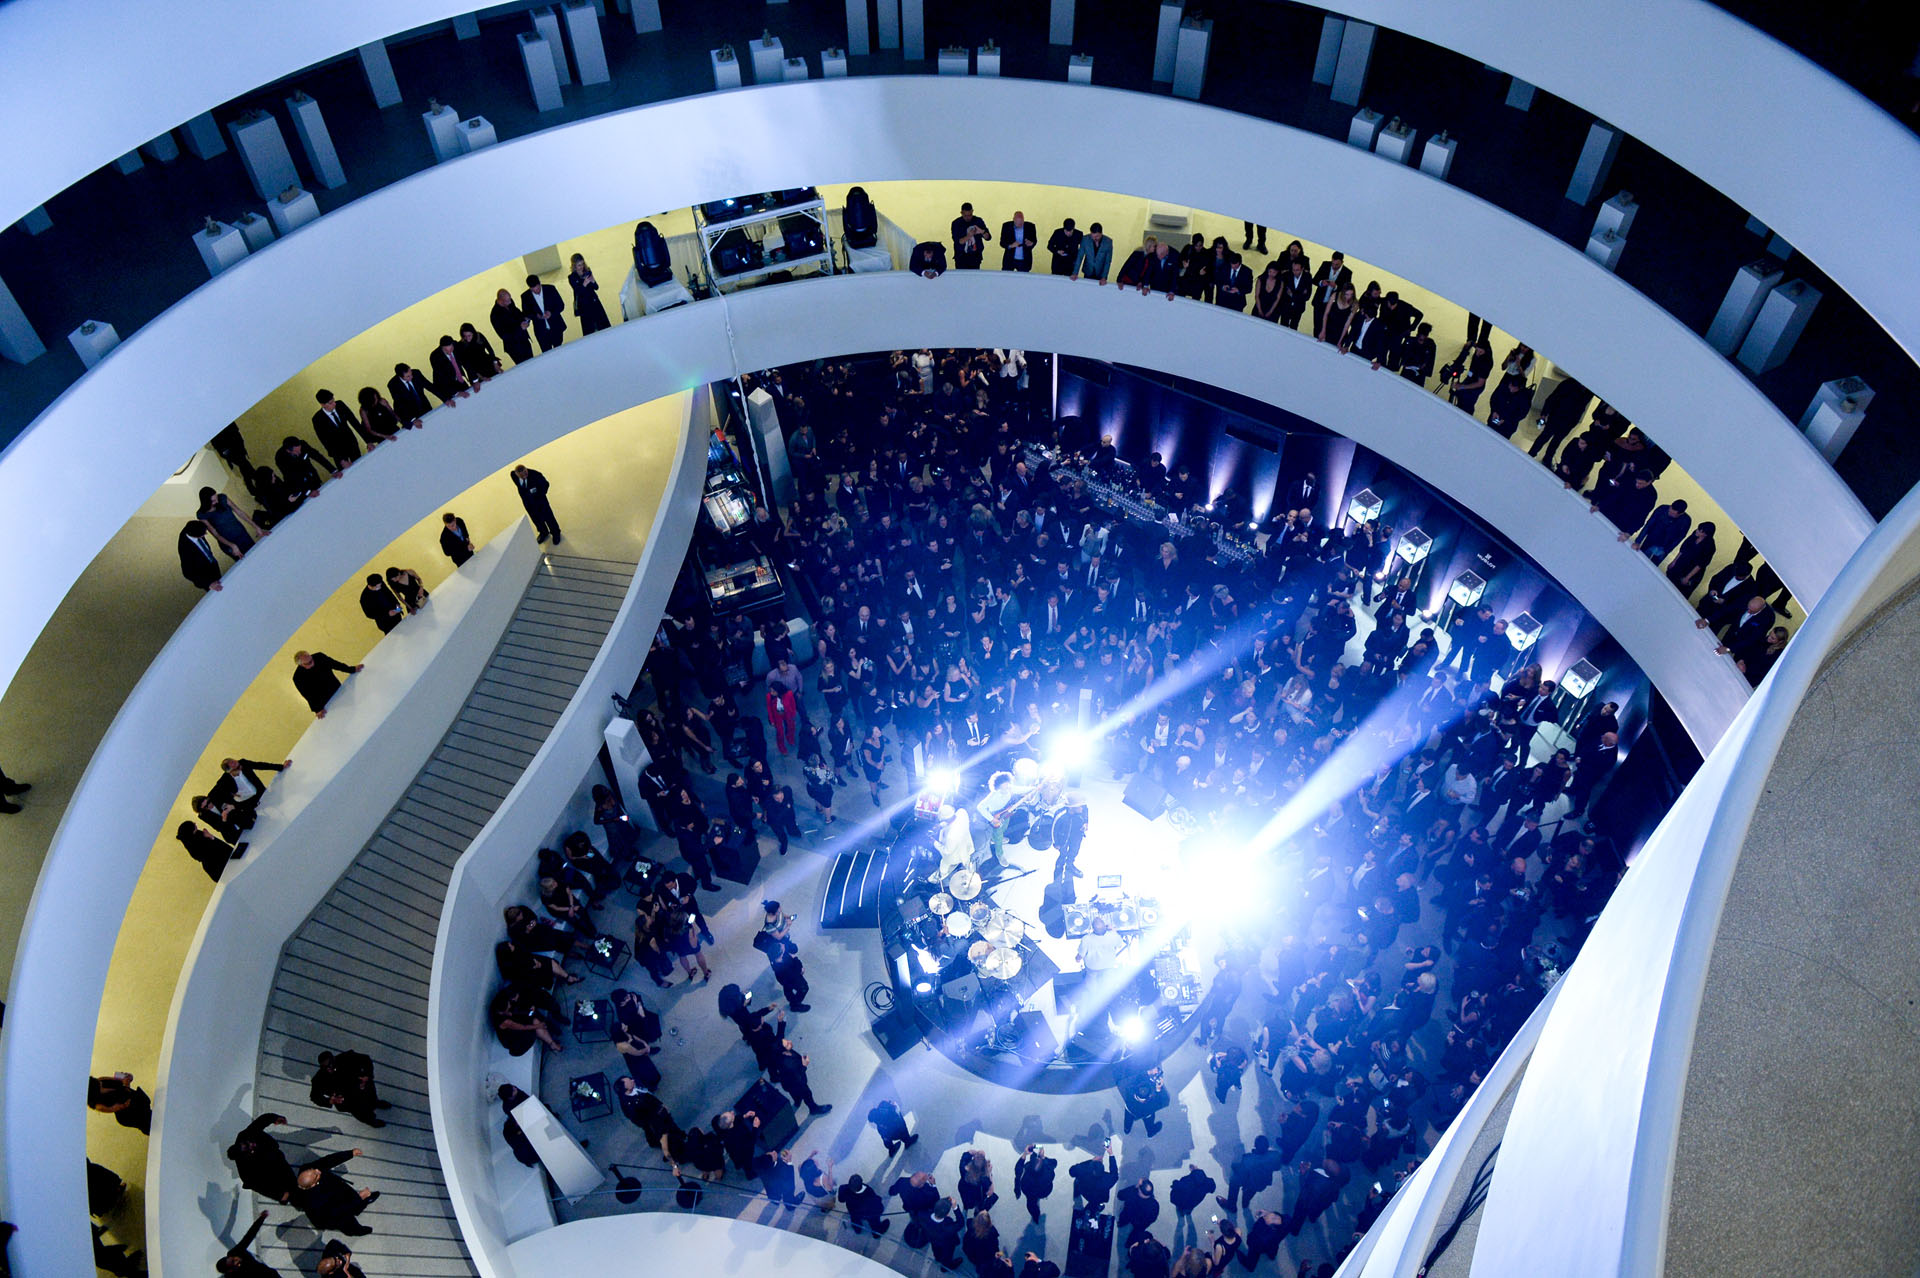 Hublot grand opening at the Guggenheim Museum